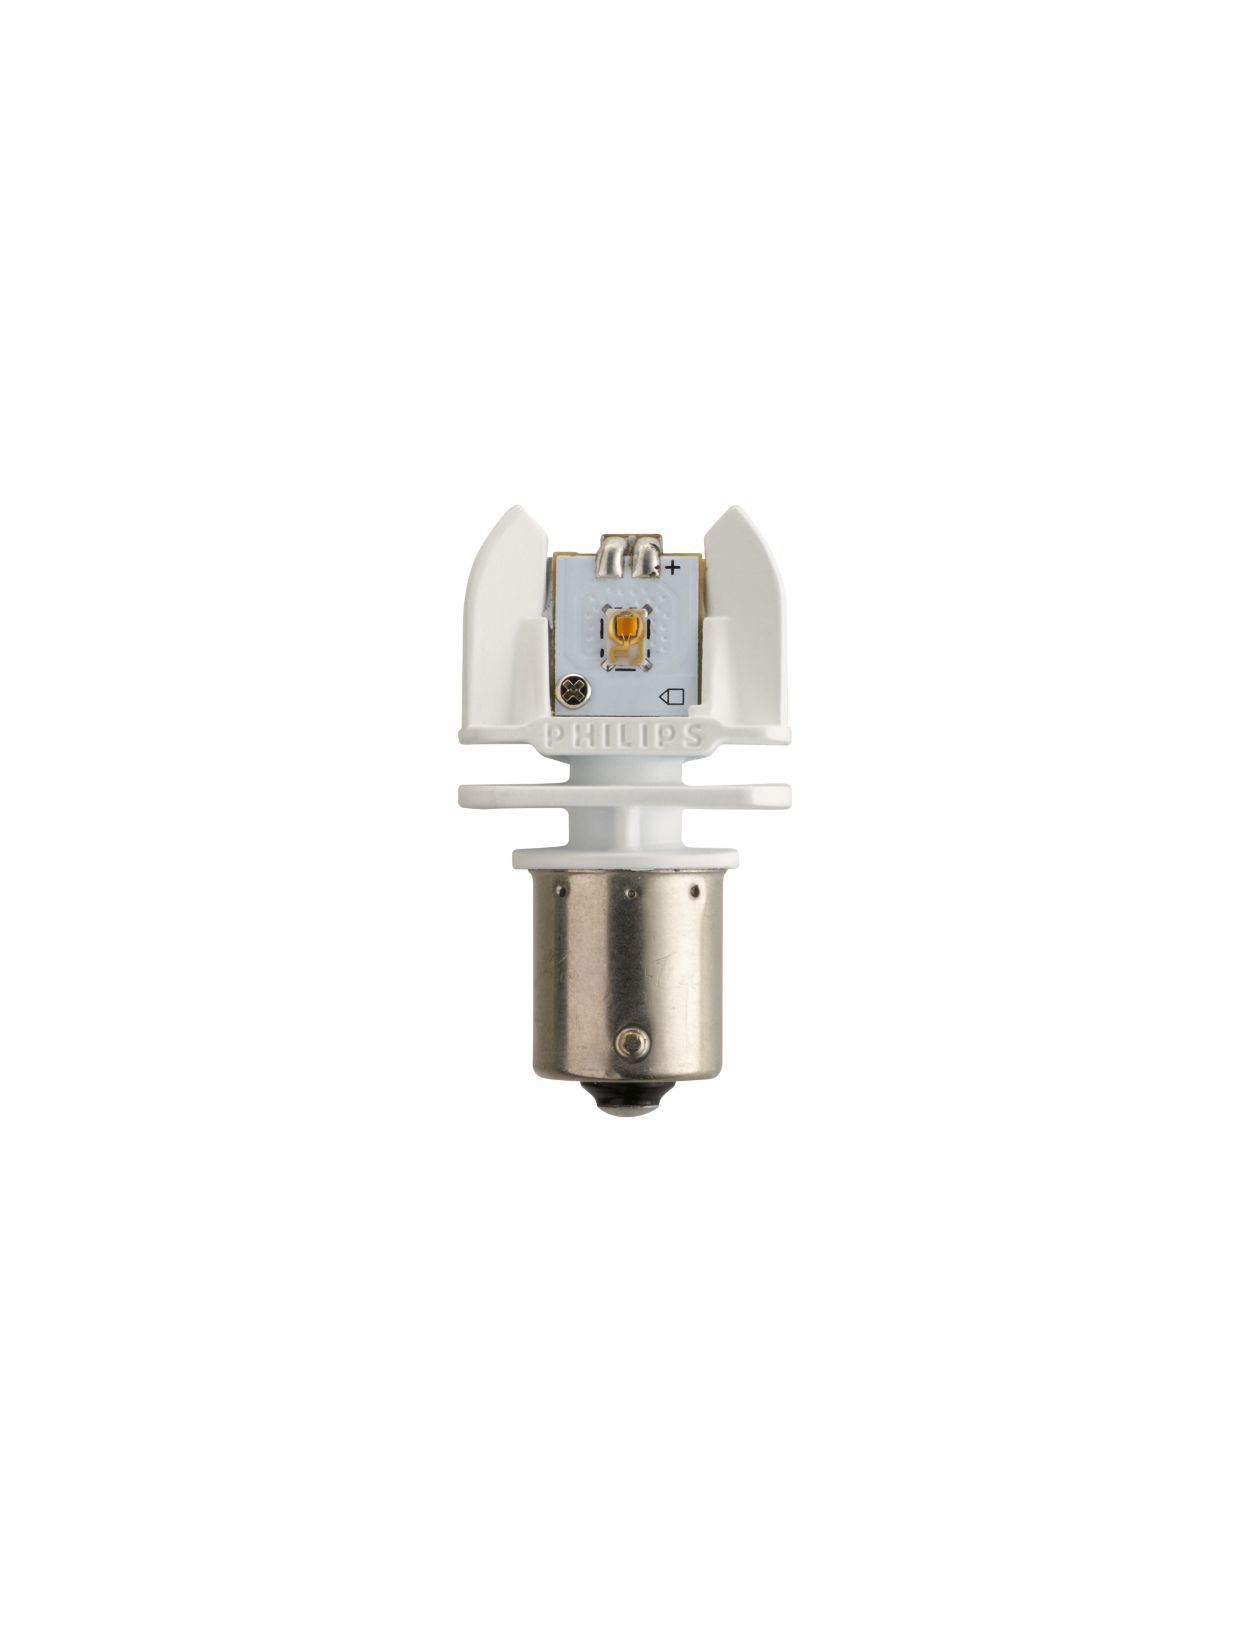 X-tremeUltinon LED Lampe de signalisation et d'intérieur 127998000KX2